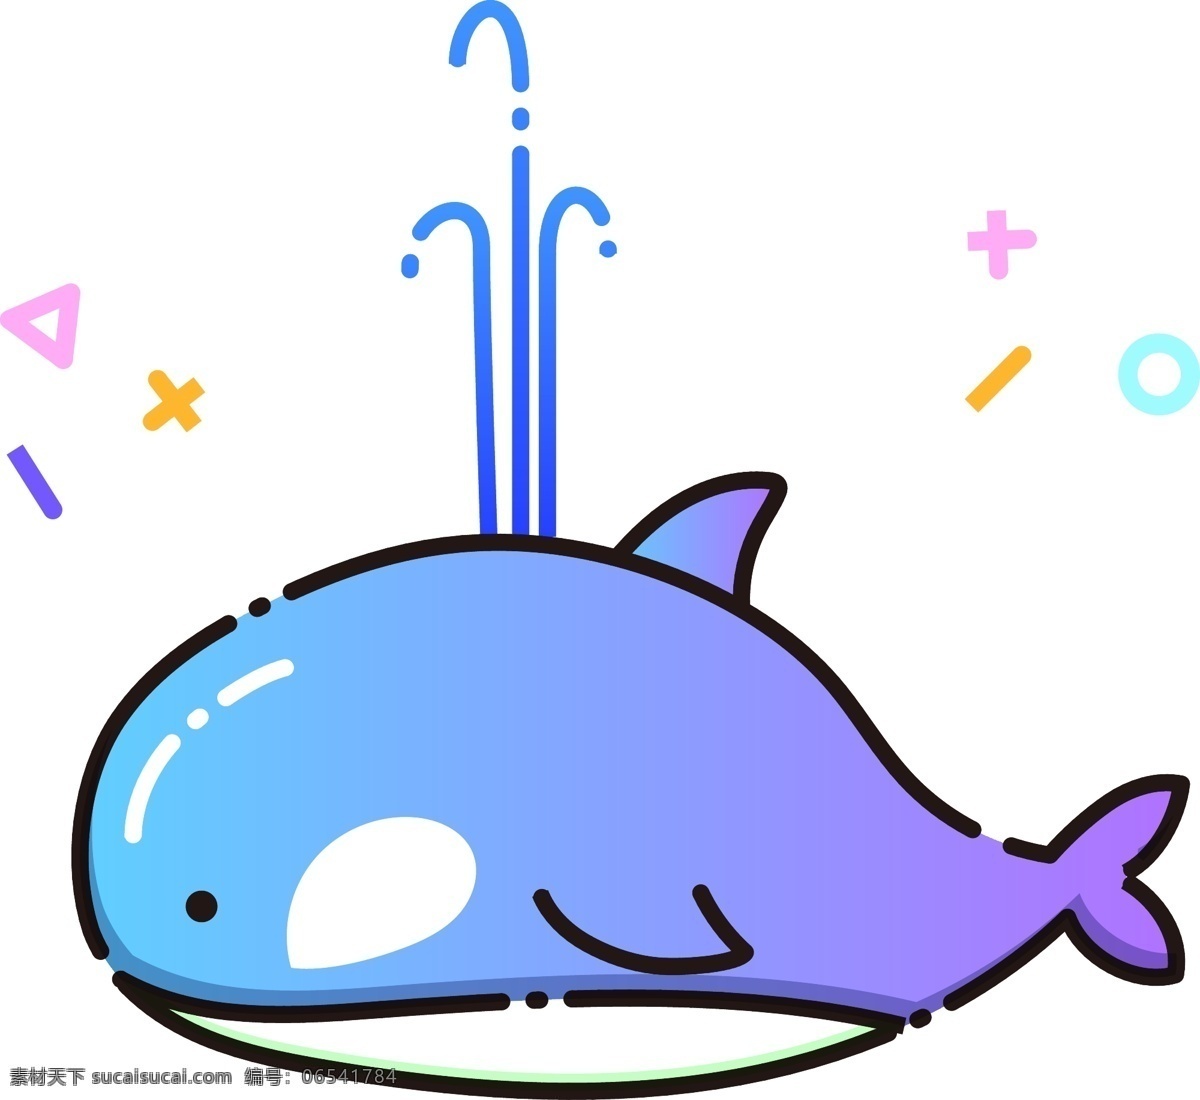 可爱蓝色鲸鱼 鲸鱼 动物 海洋生物